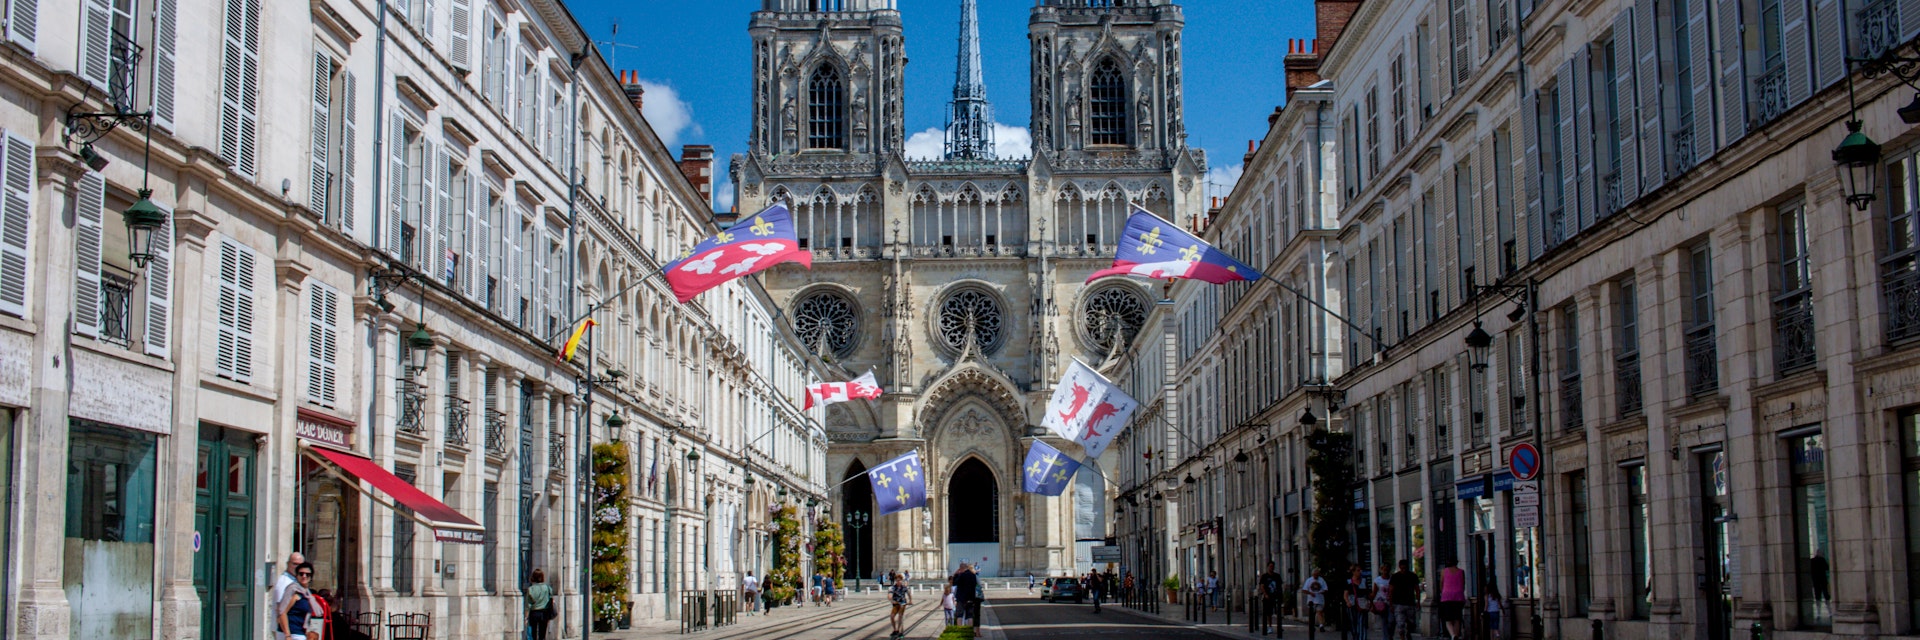 Cathédrale Sainte-Croix rises up above Rue Jeanne d'Arc in Orléans, France.